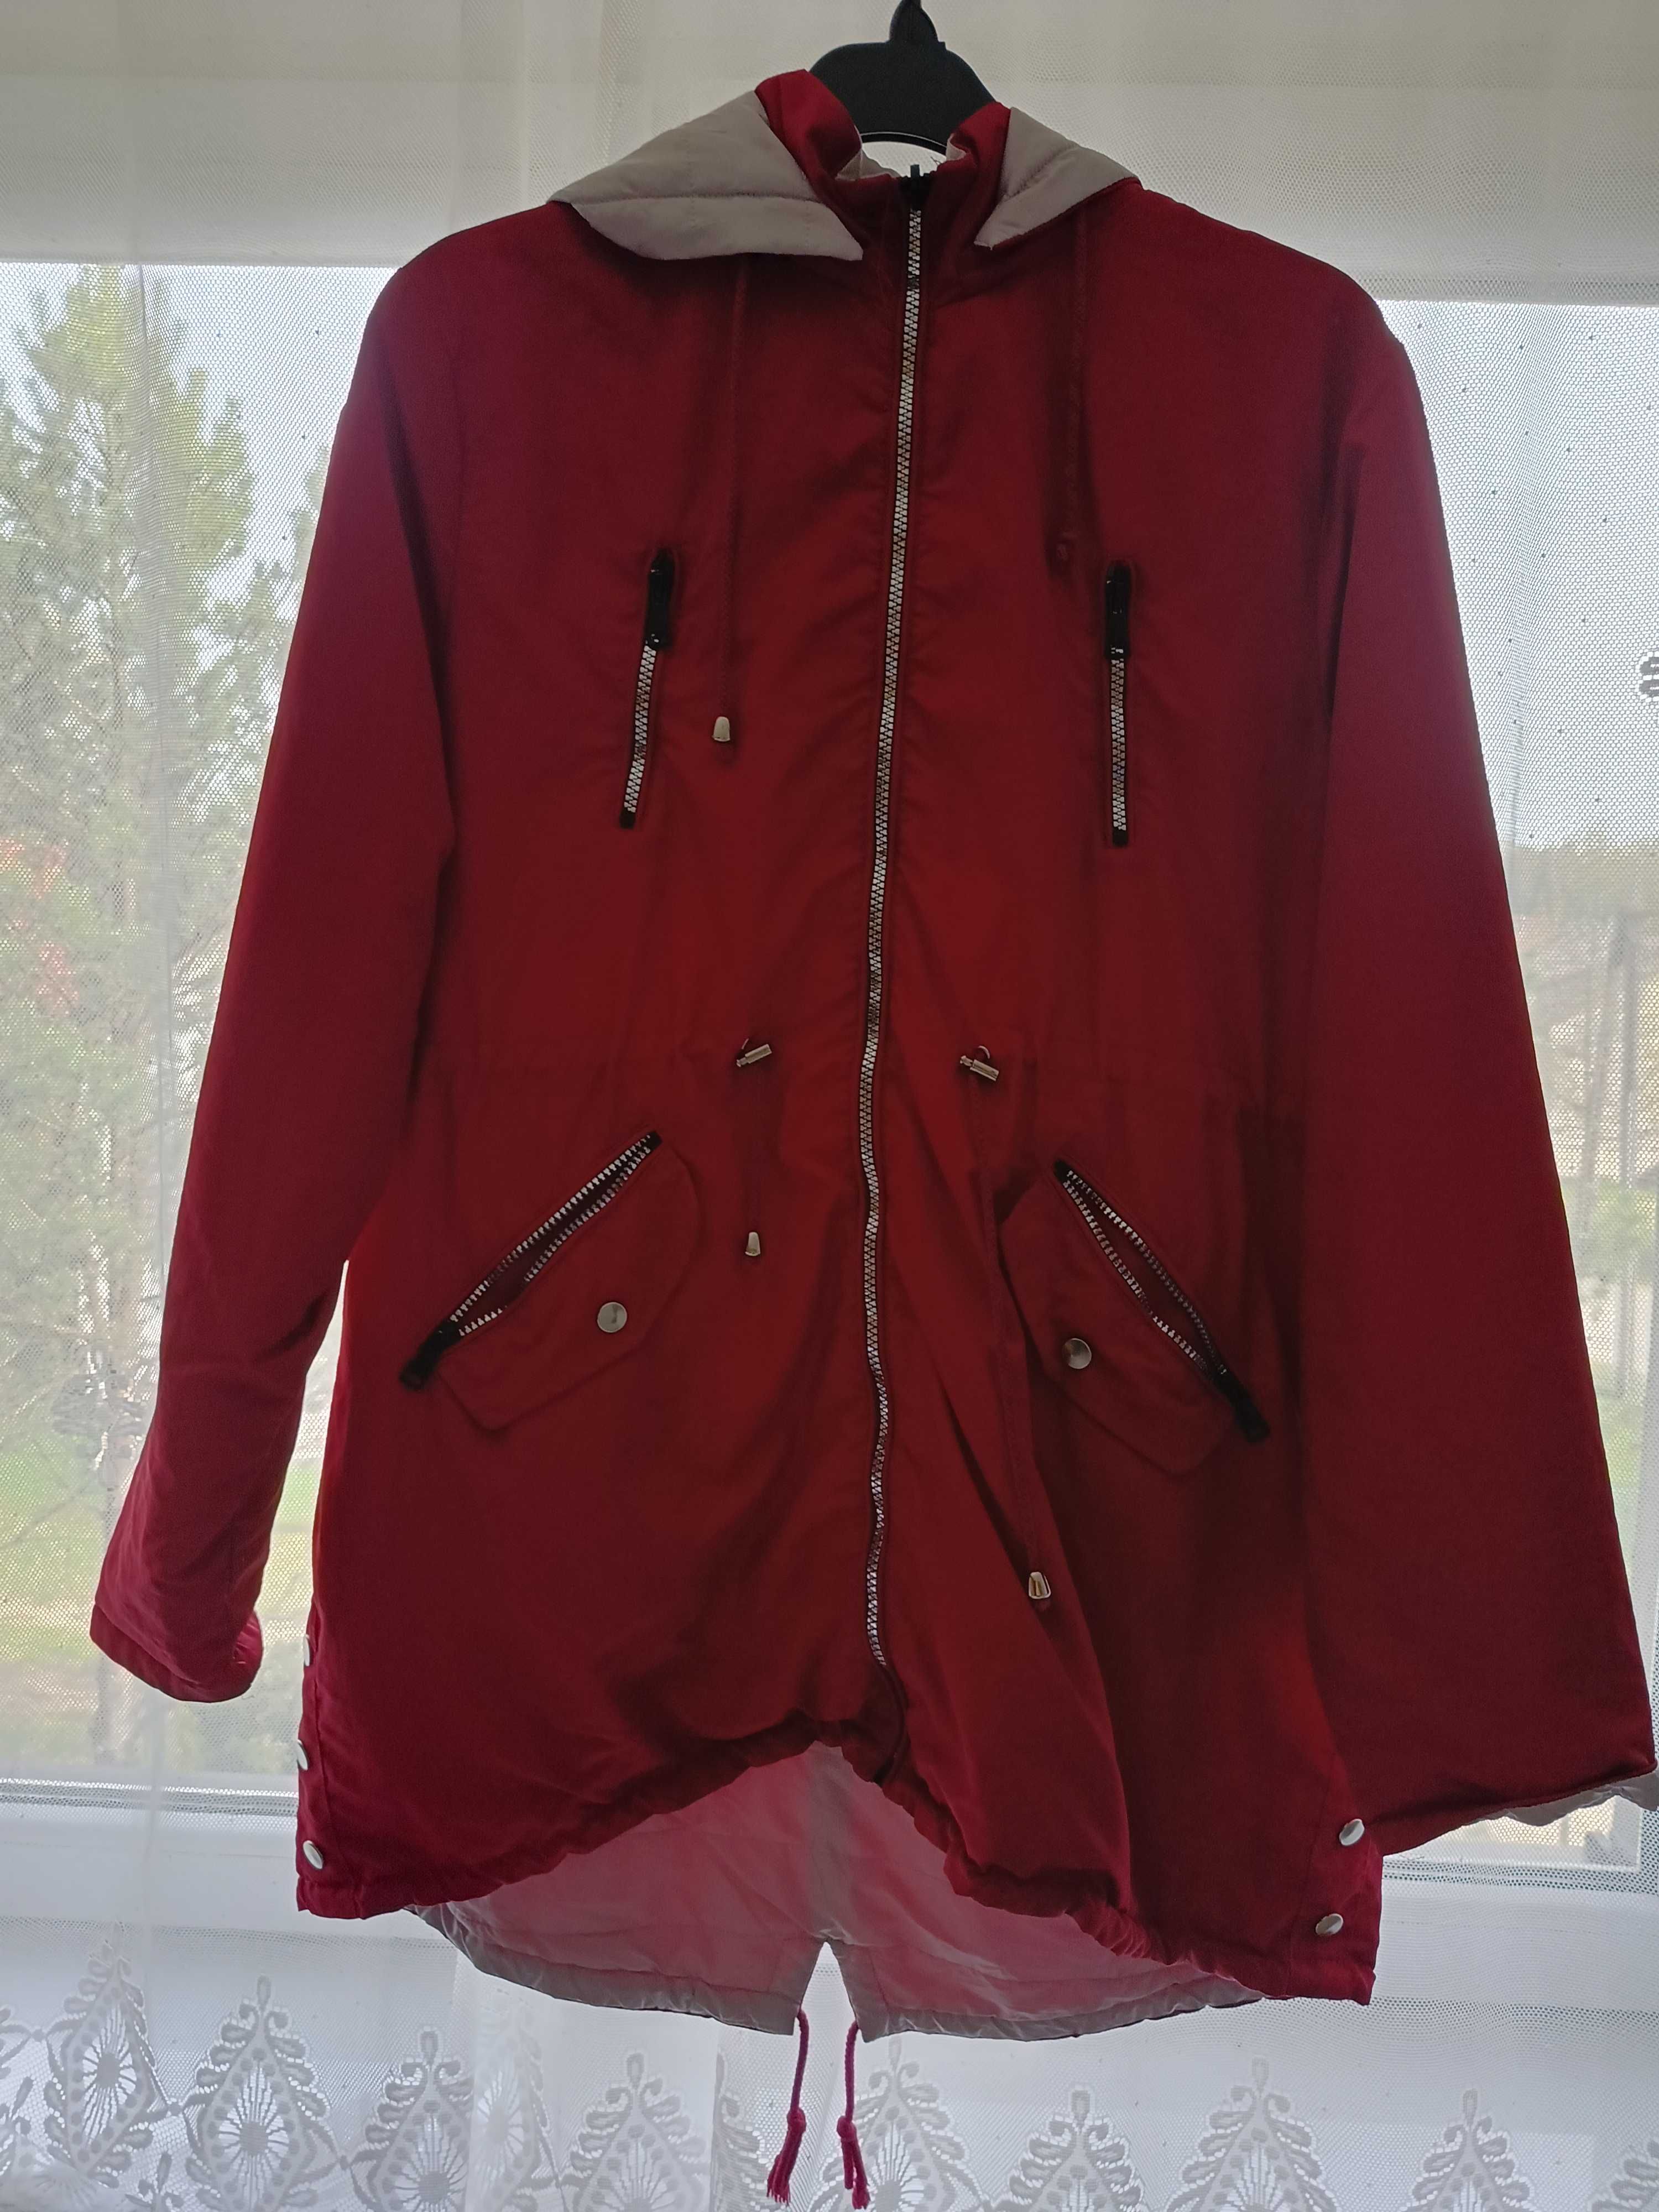 Dwustronna kurtka w kolorze czerwonym i szarym